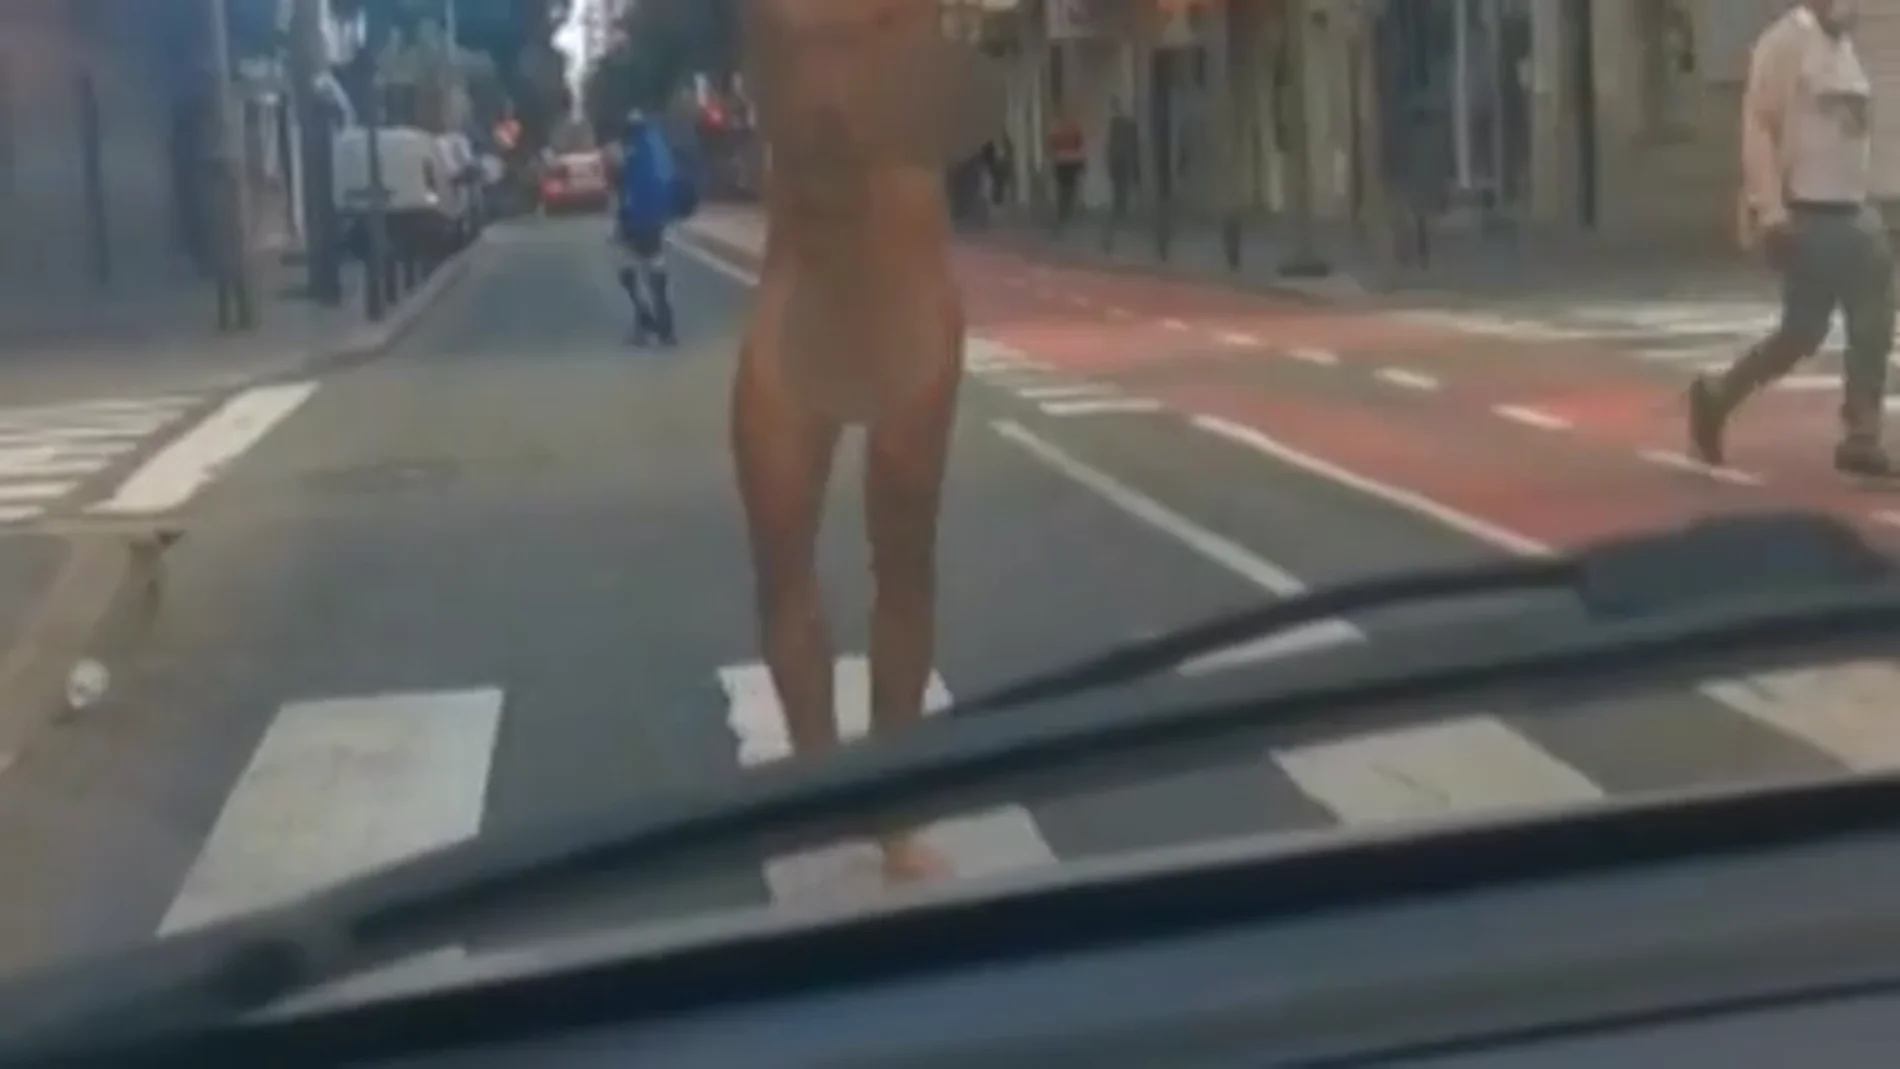 Un hombre se pasea desnudo en pleno centro de Las Palmas de Gran Canaria